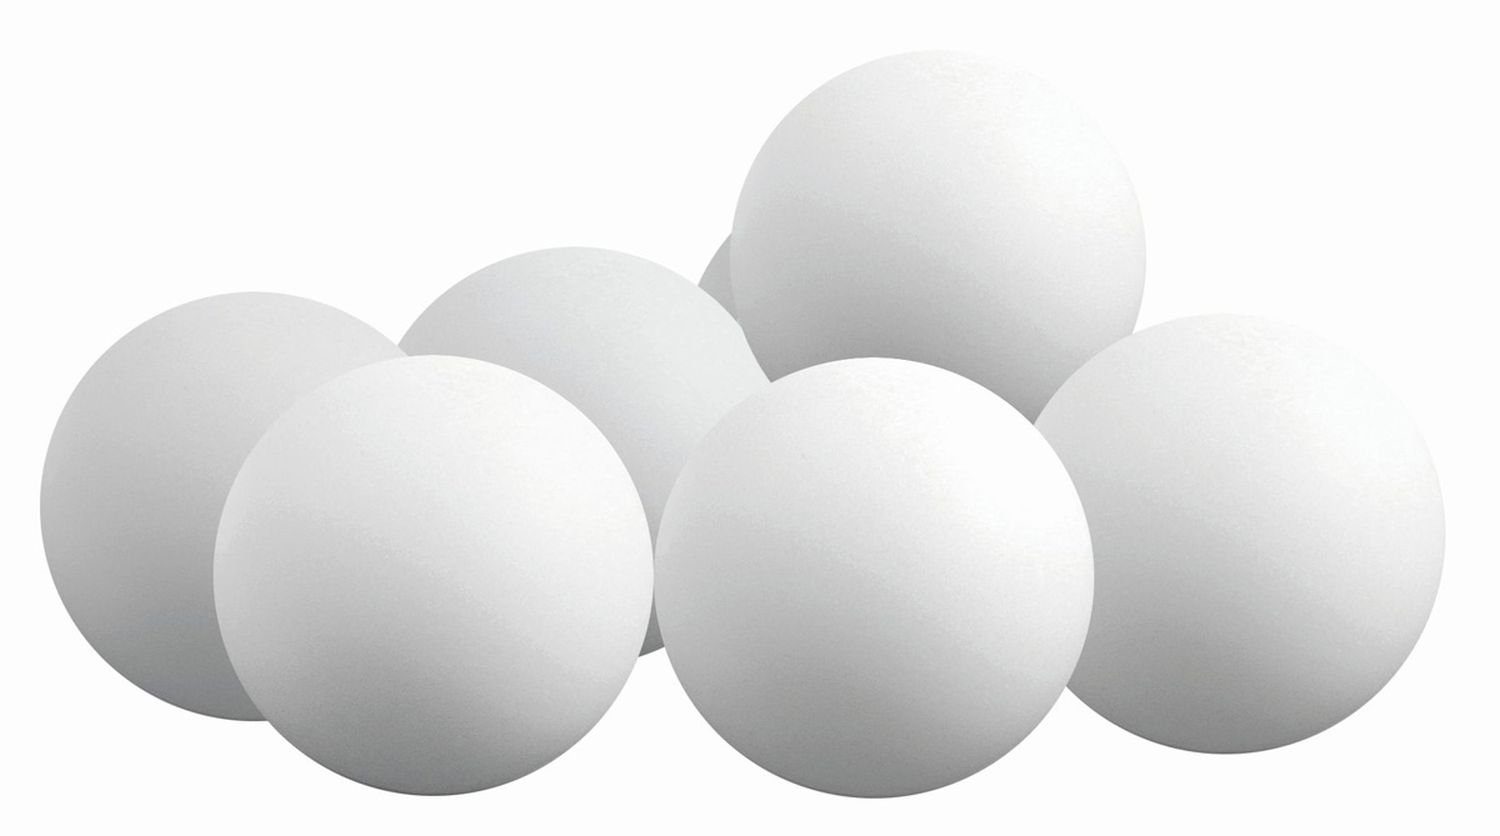 Sunflex Tischtennisball 1 Ball weiß, Tischtennis Bälle Tischtennisball Ball Balls